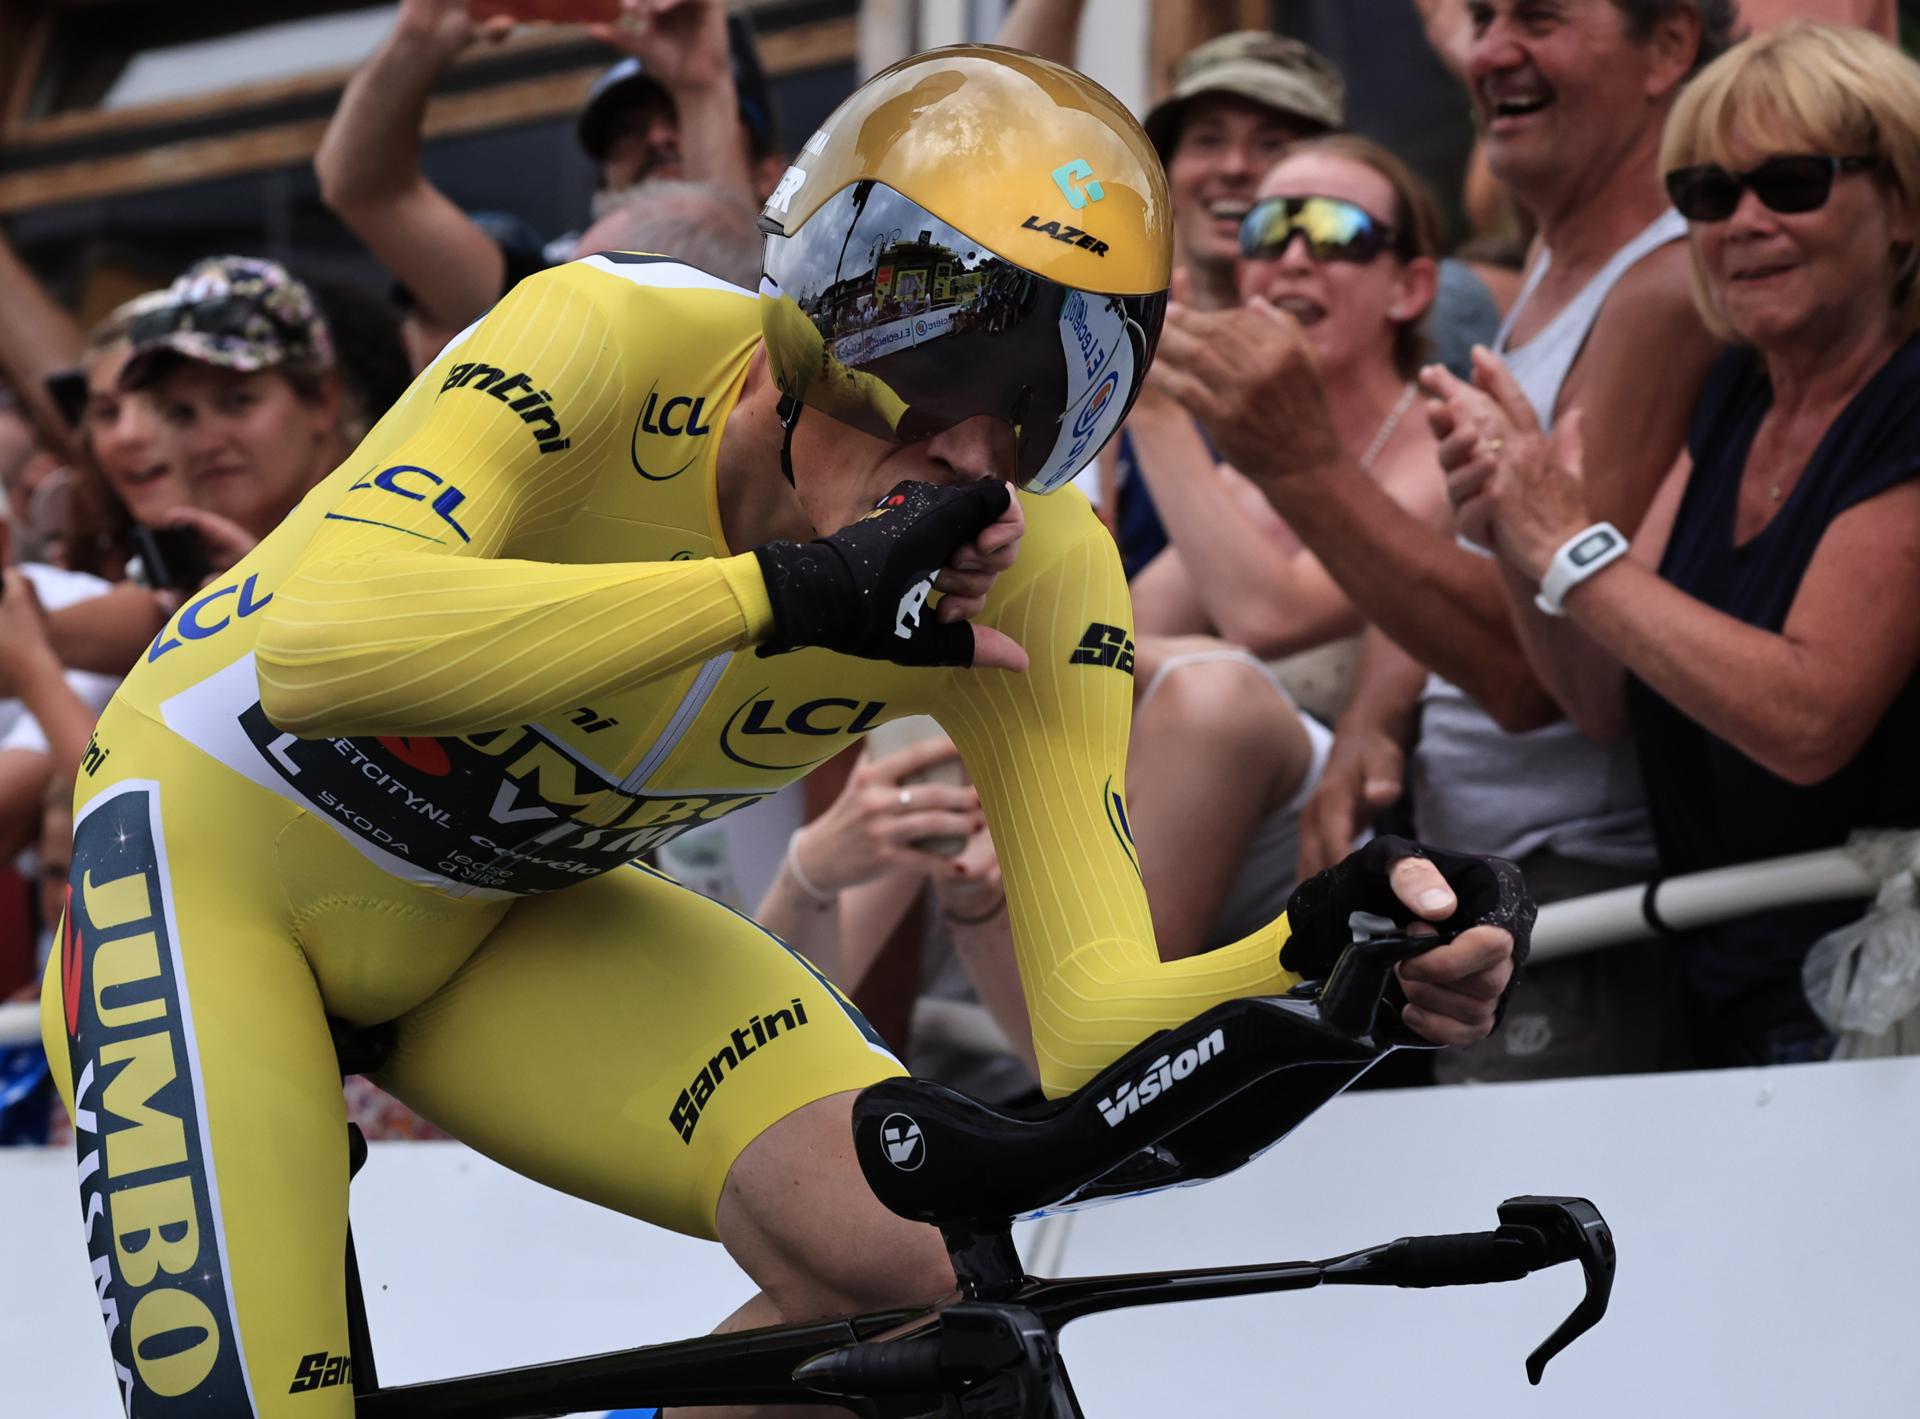 Vingegaard sobrevuela la crono y da un golpe al Tour de Francia, Rodríguez cae del podio